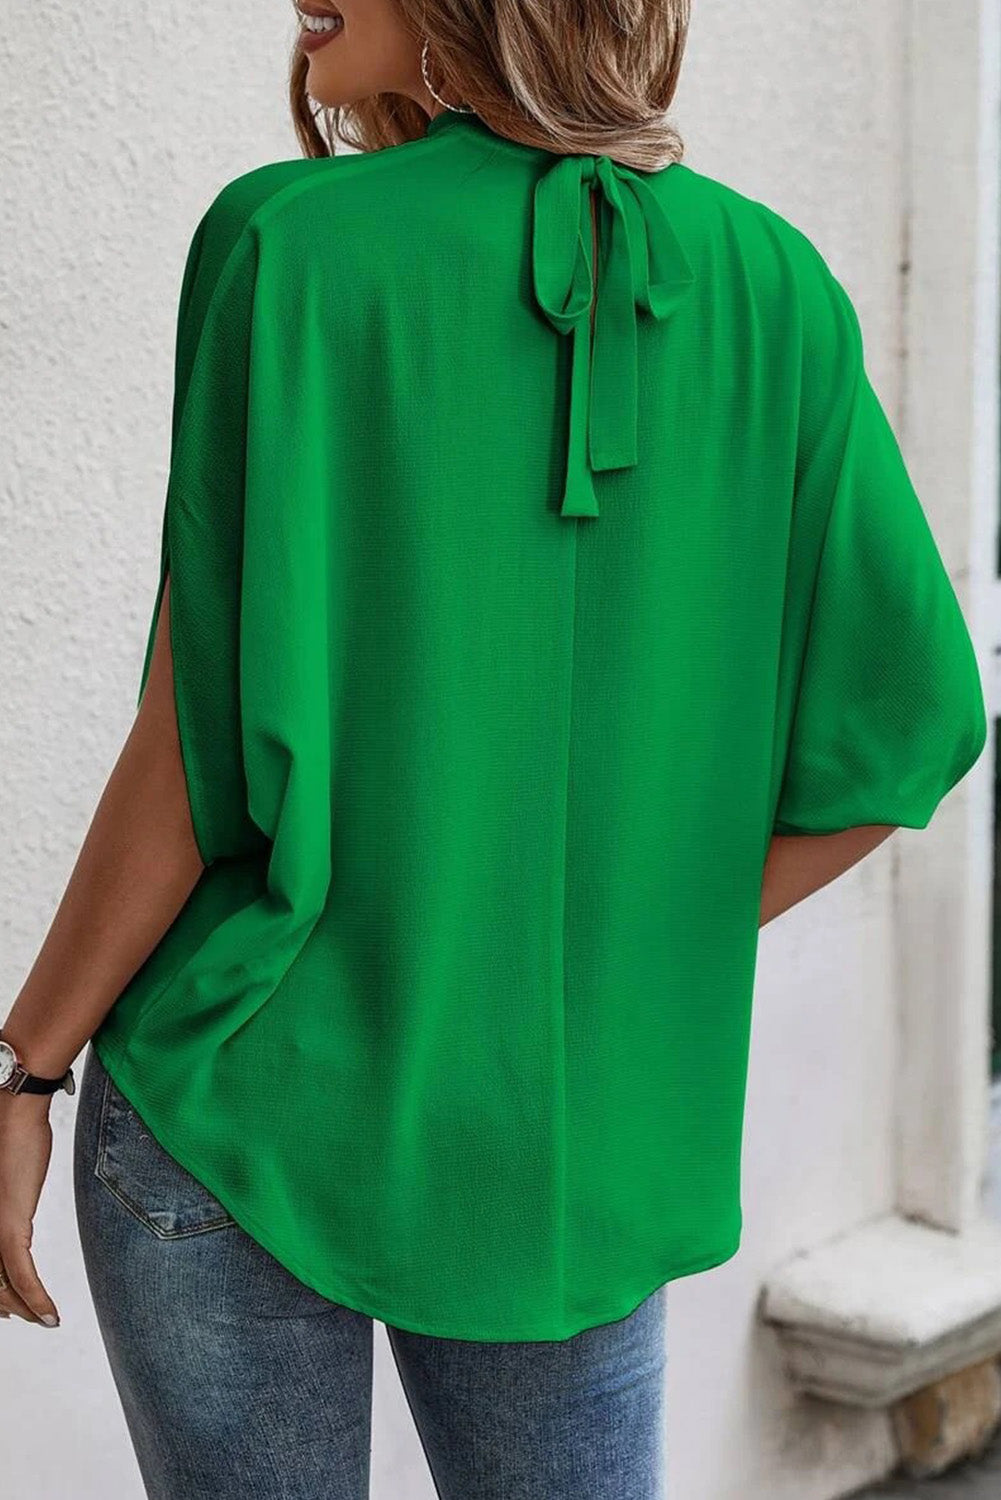 Hellgrüne, einfarbige Bluse mit Stehkragen und geteilten Fledermausärmeln